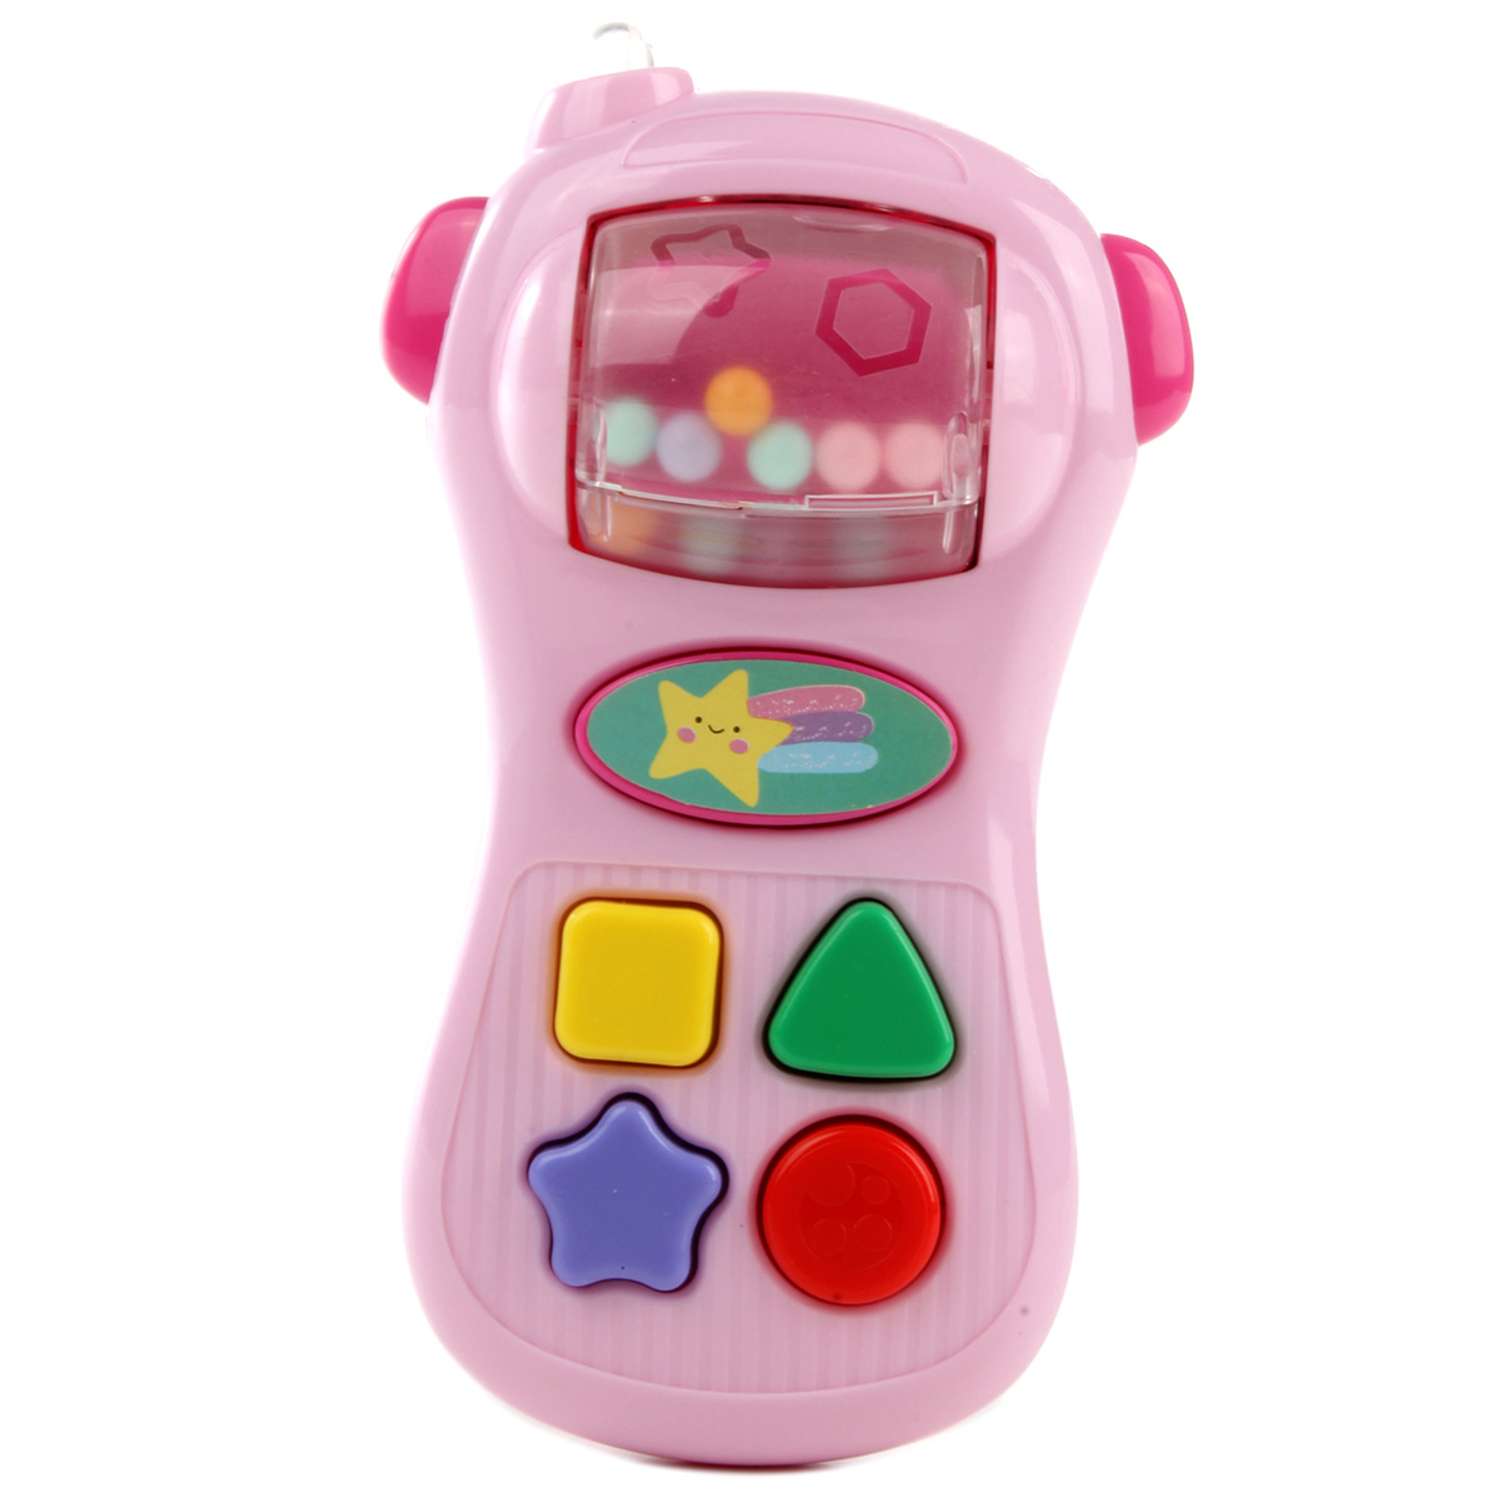 Развивающая игрушка Veld Co Телефон с фигурками - фото 4